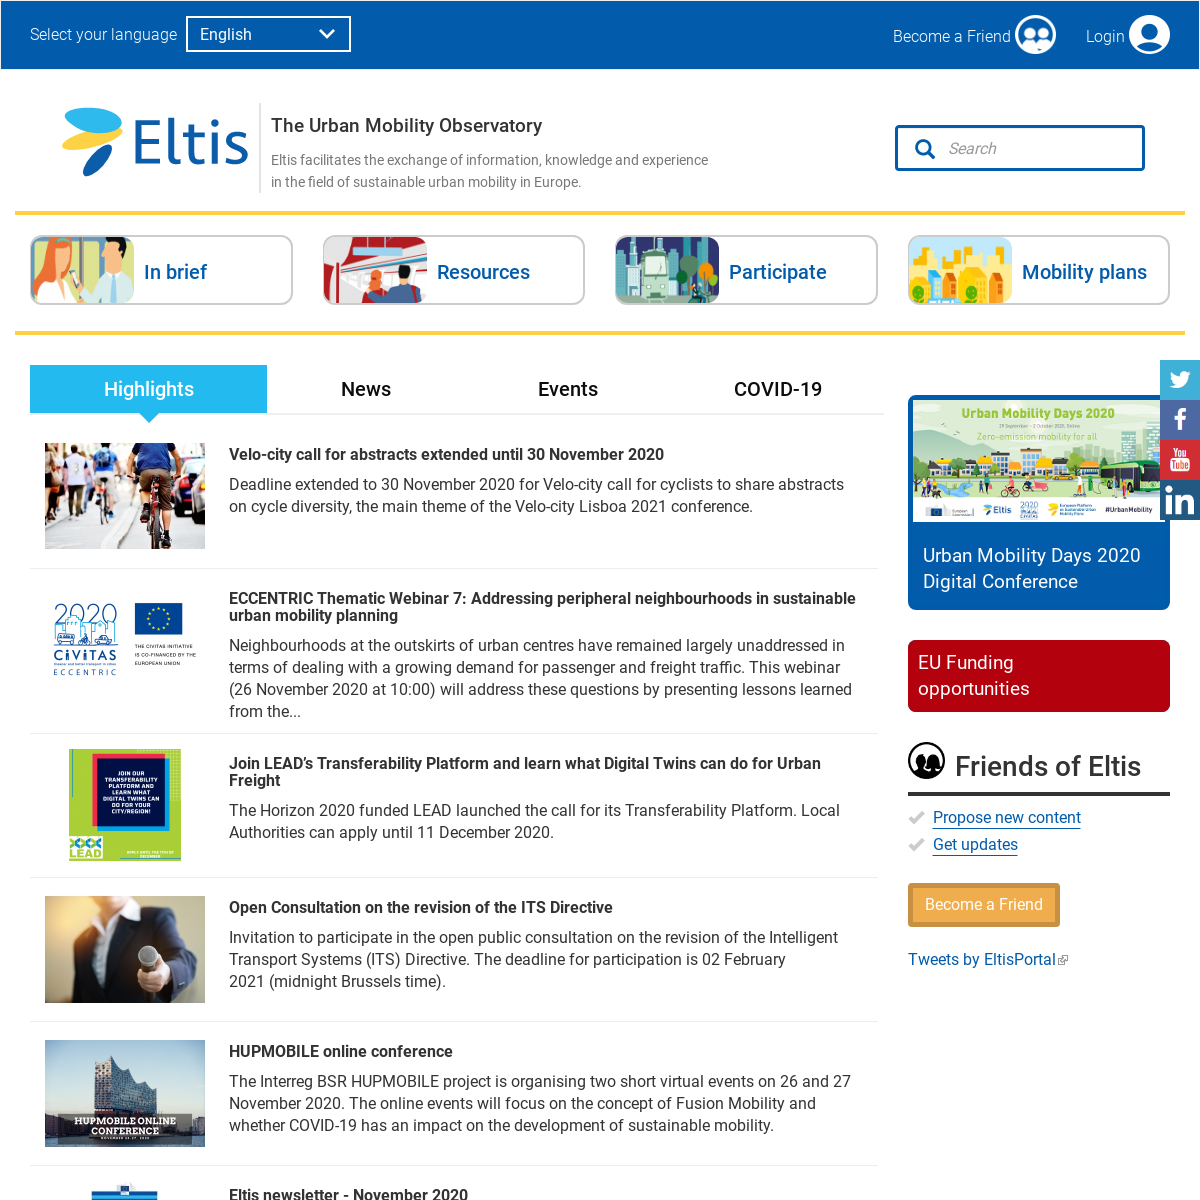 A complete backup of eltis.org